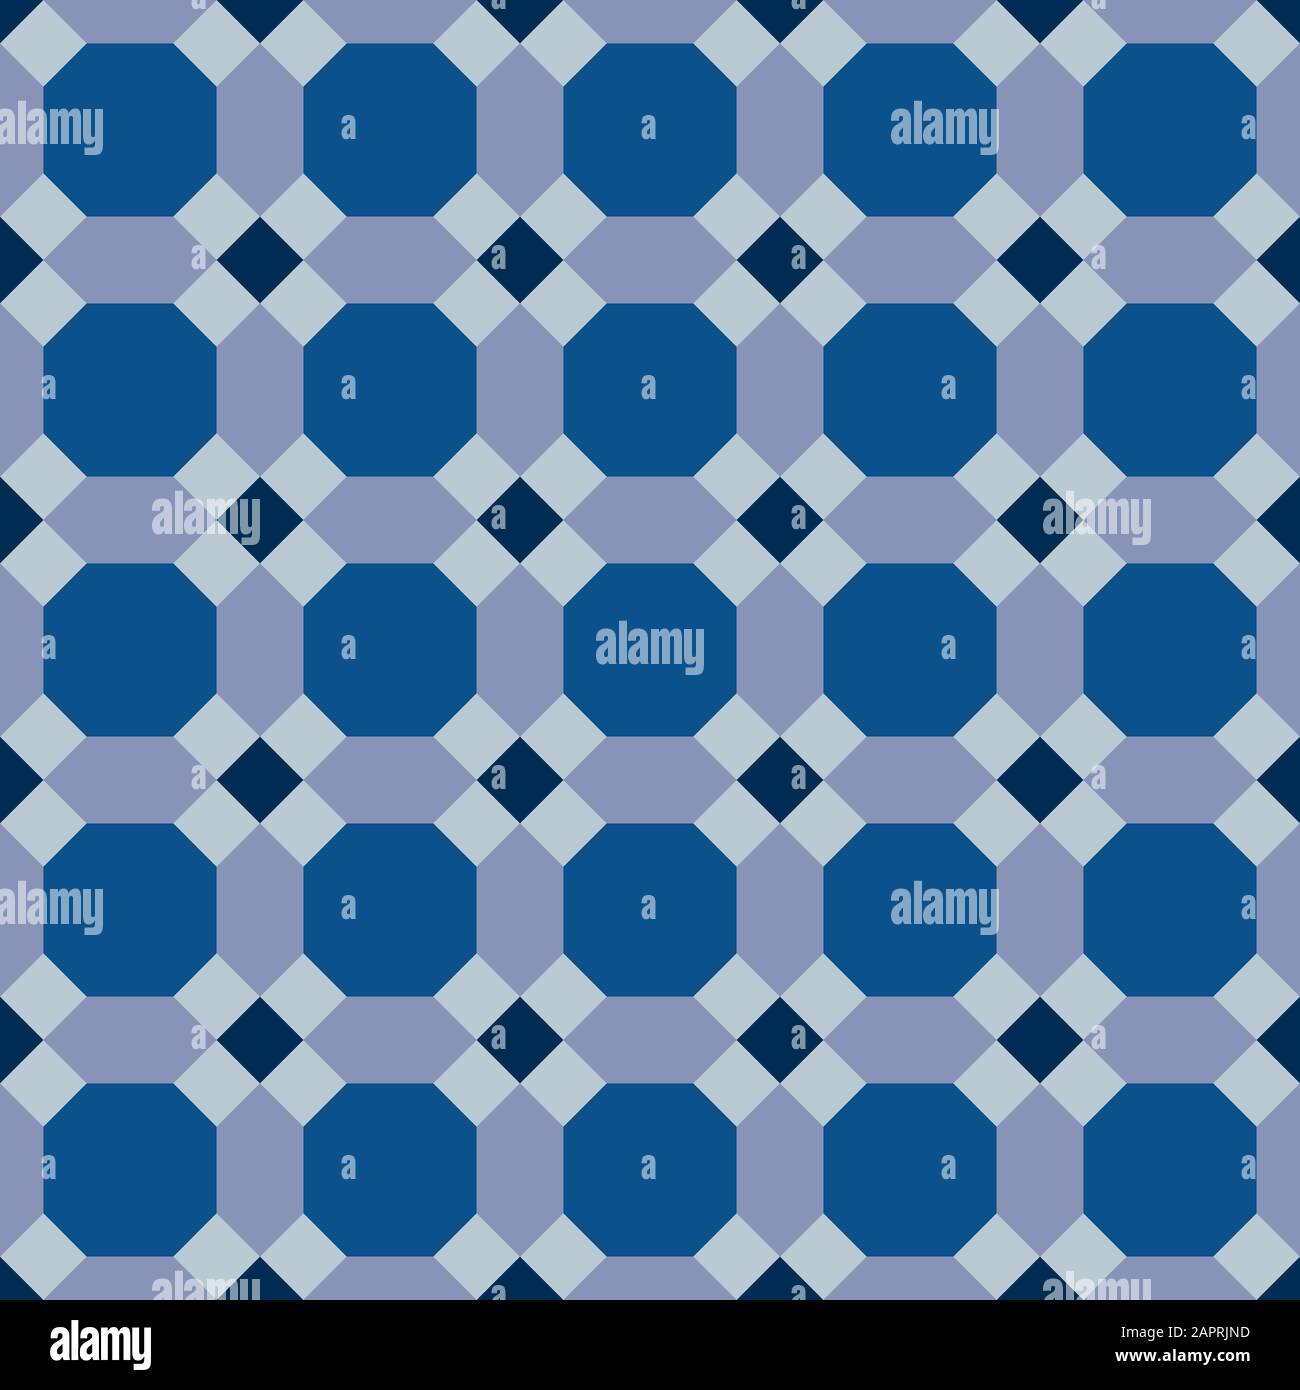 Classic blau verzierten Nahtlose Vektor Muster der maurischen Fliesen Dekorationen. Kachelbar Mosaik Hintergrund im islamischen Stil. Stock Vektor